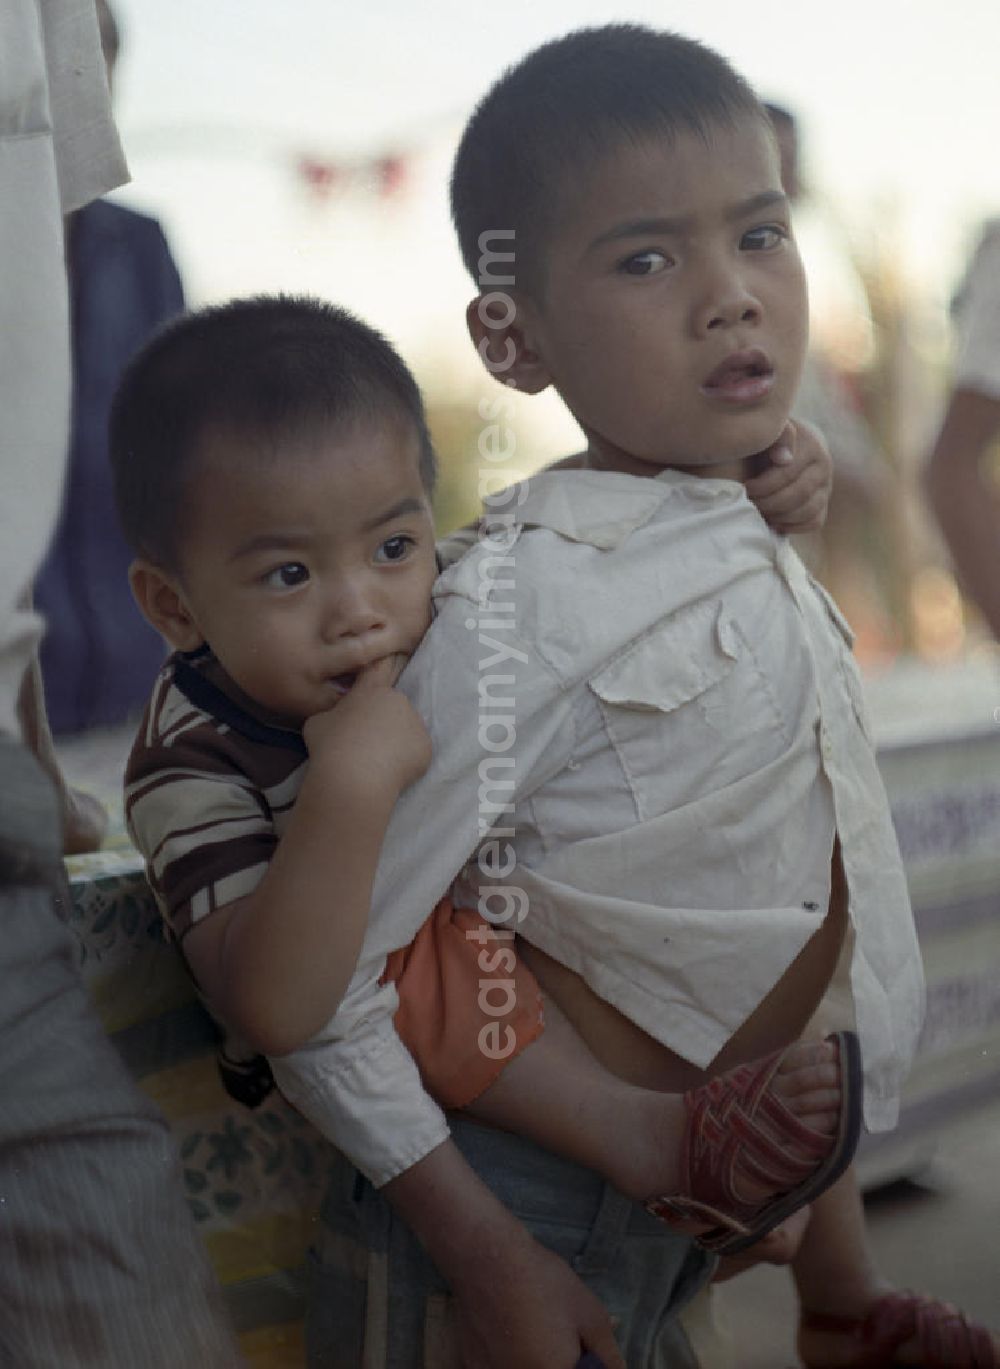 GDR photo archive: Vientiane - Ein Junge trägt seinen kleinen Bruder auf dem Rücken in einem Dorf in der Demokratischen Volksrepublik Laos.